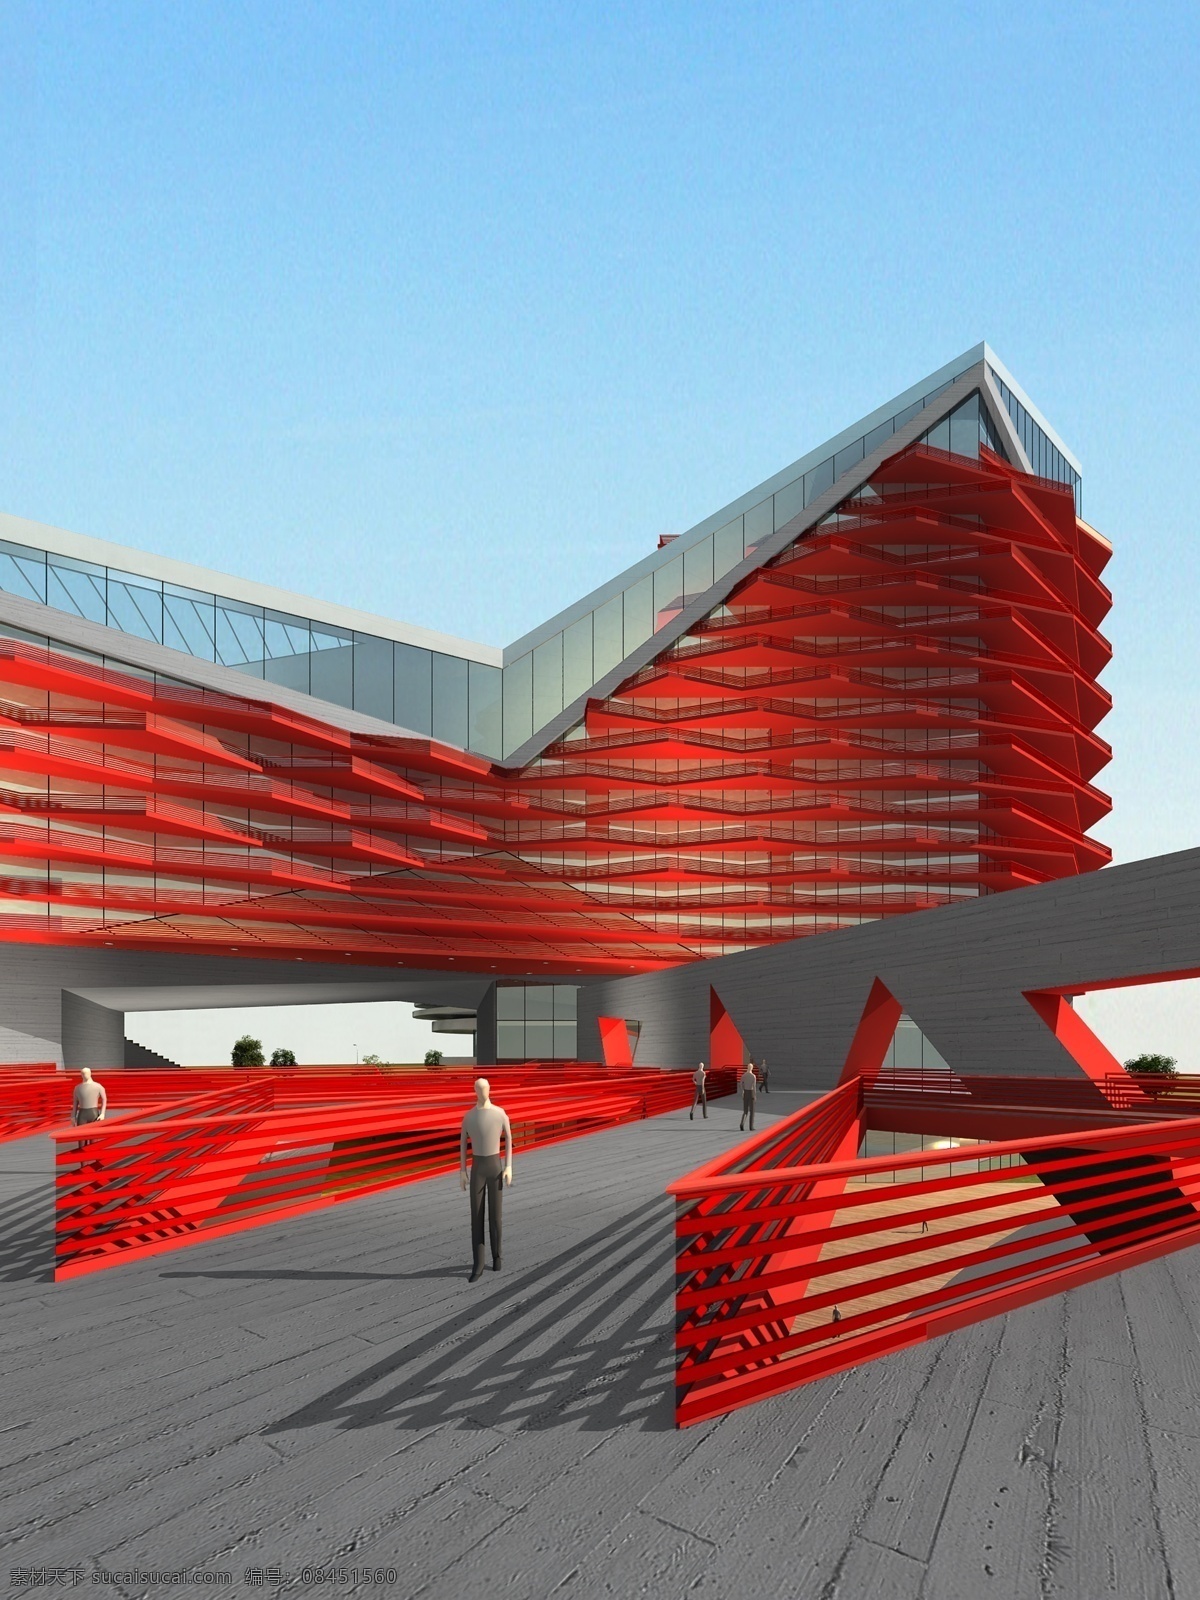 商业楼 建筑 效果图 人物 马路 房屋 建筑物 蓝色天空 环境设计 建筑设计 红色